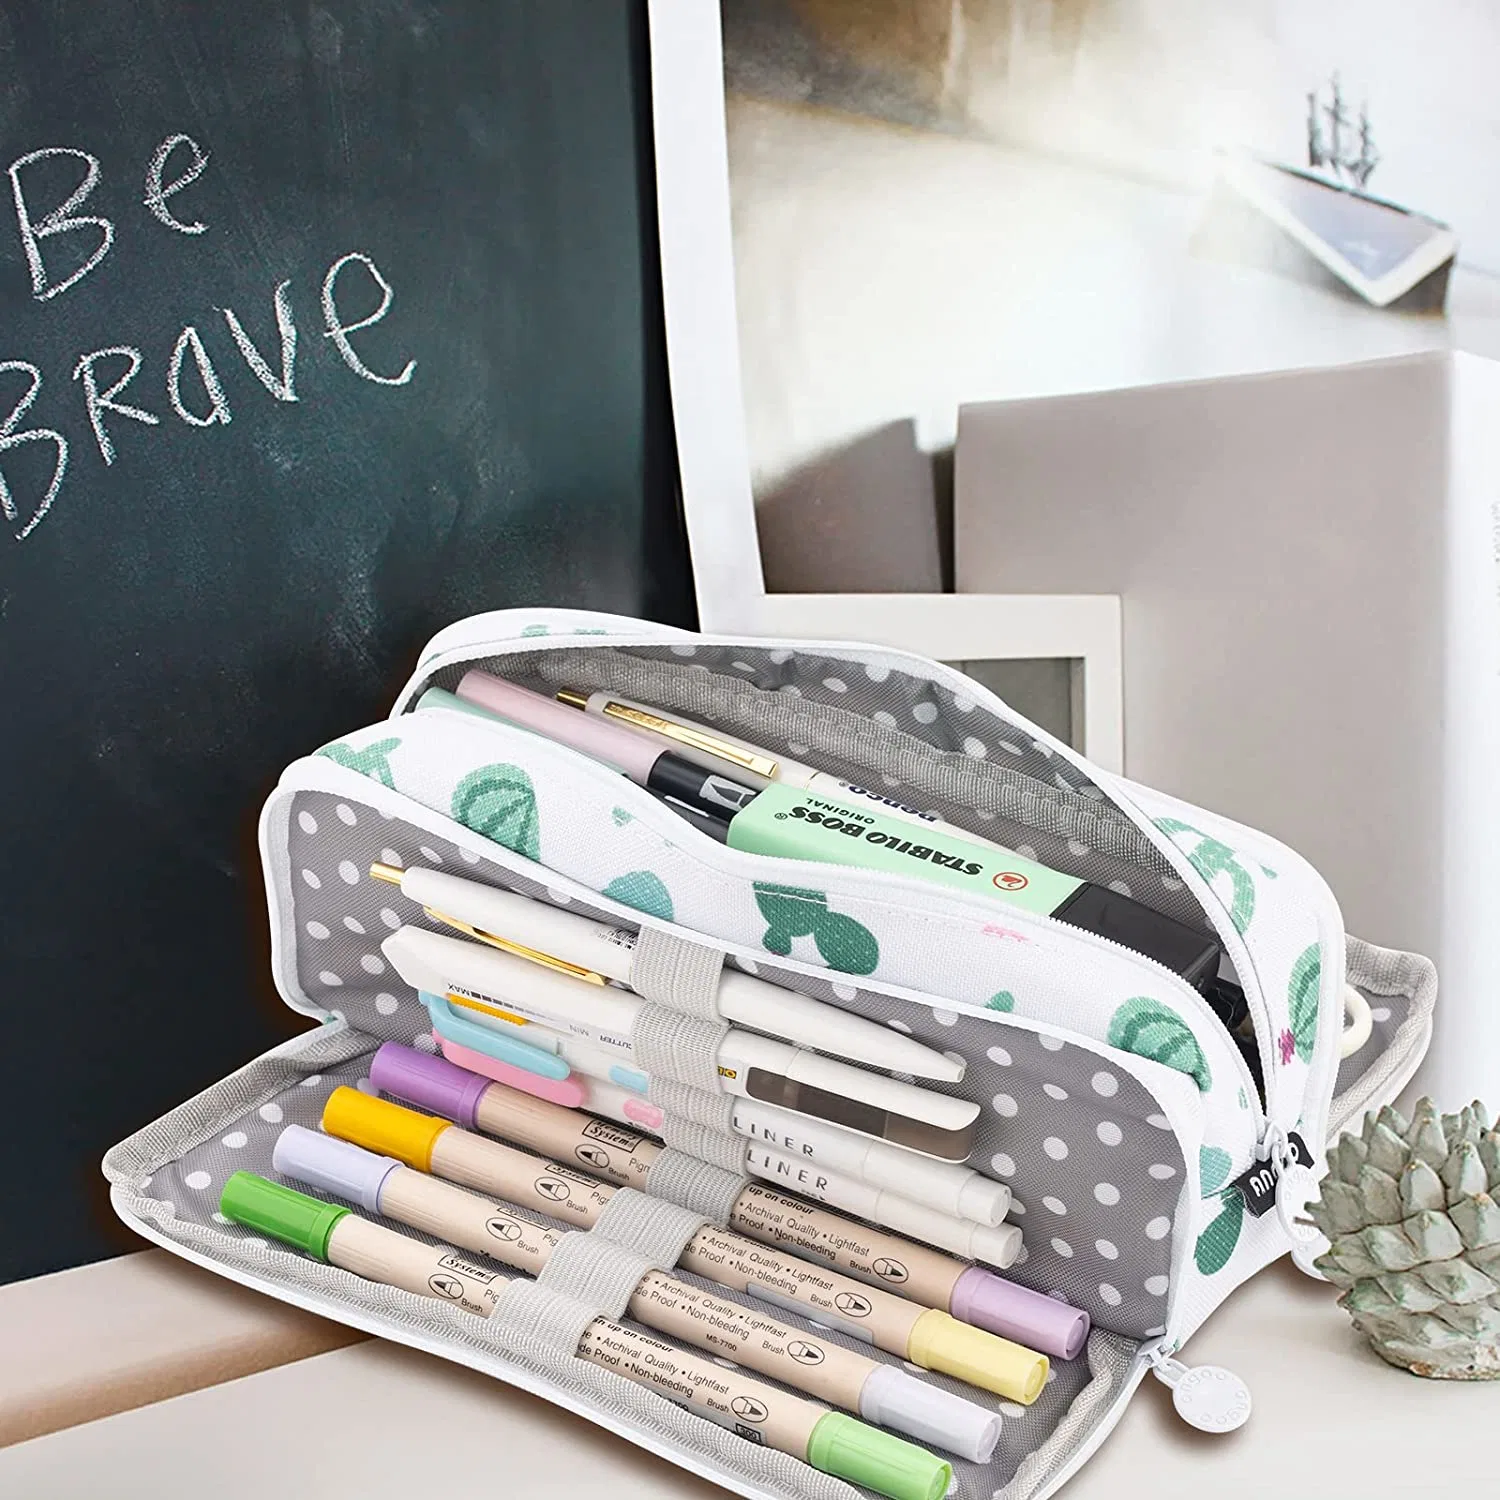 Crayon Crayon multifonction de cas de fermeture à glissière Sac stylo plume crayon case Sac cosmétique pour les fournitures de bureau